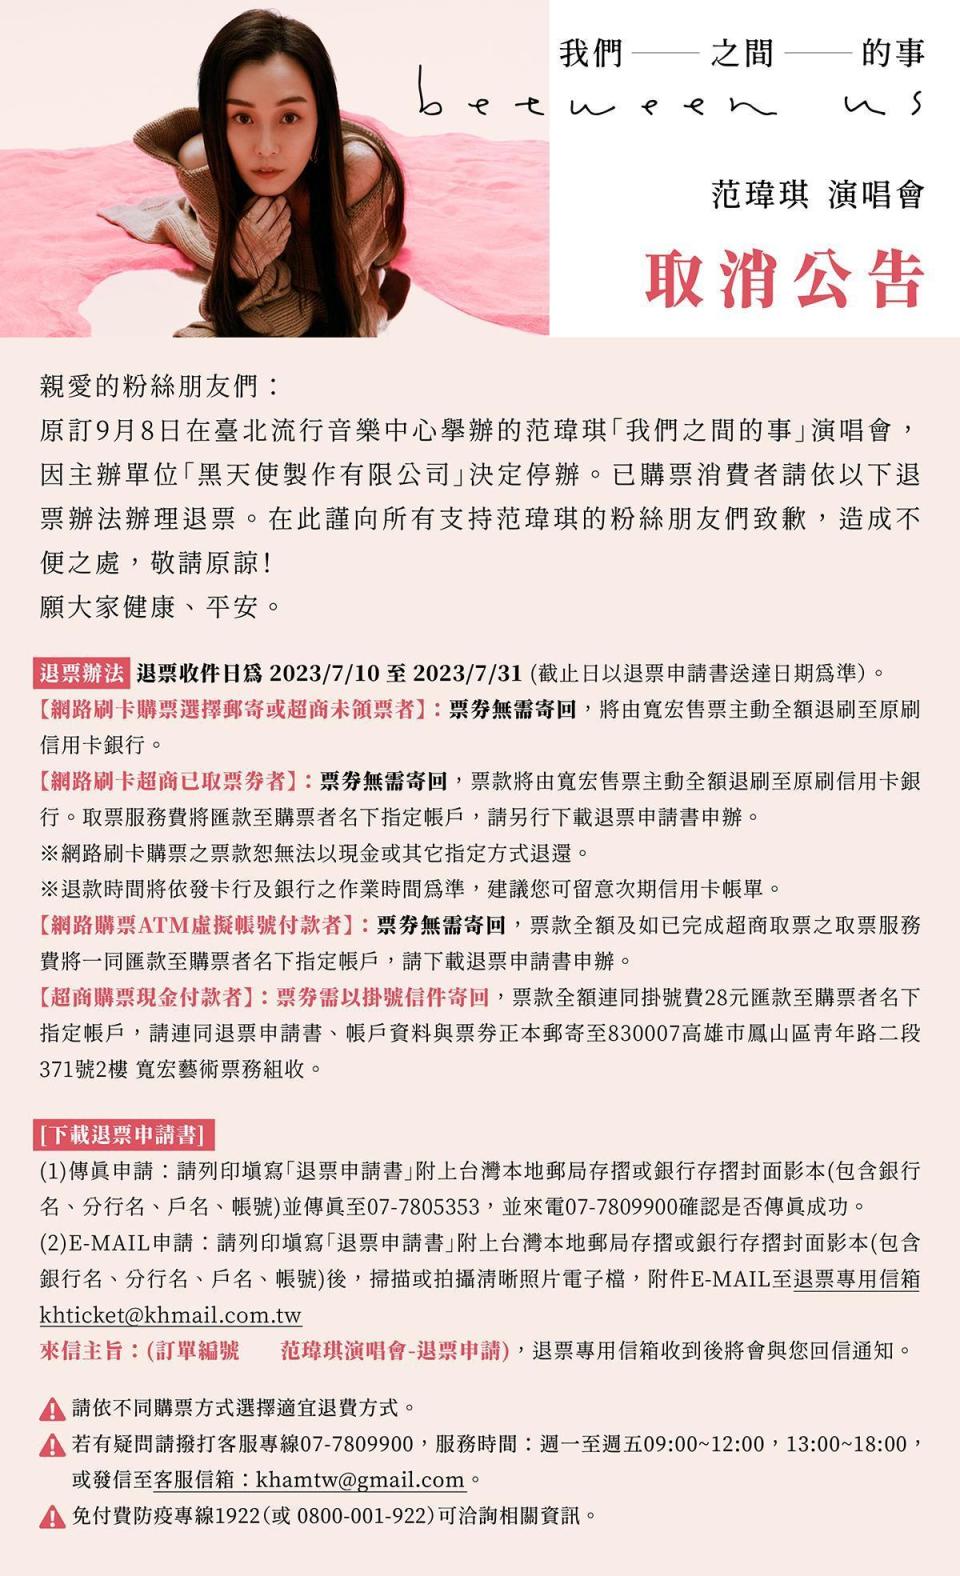 寬宏藝術臉書公告范瑋琪演唱會退票辦法。（翻攝寬宏藝術臉書）